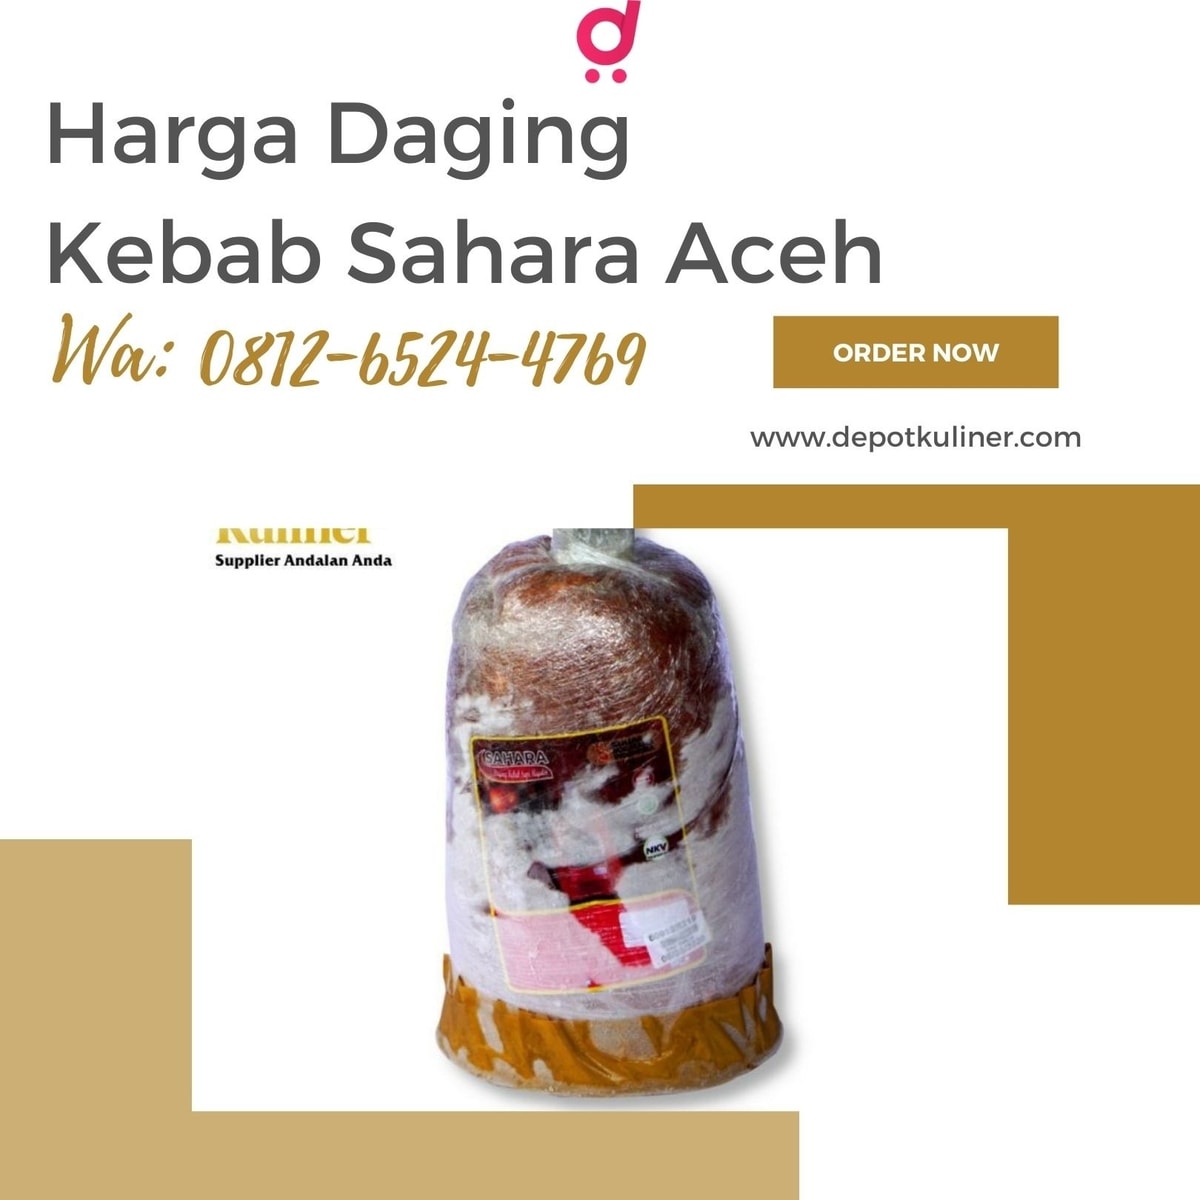 HARGA TERMURAH, Call 0812-6524-4769, Distributor Daging Kebab Aceh